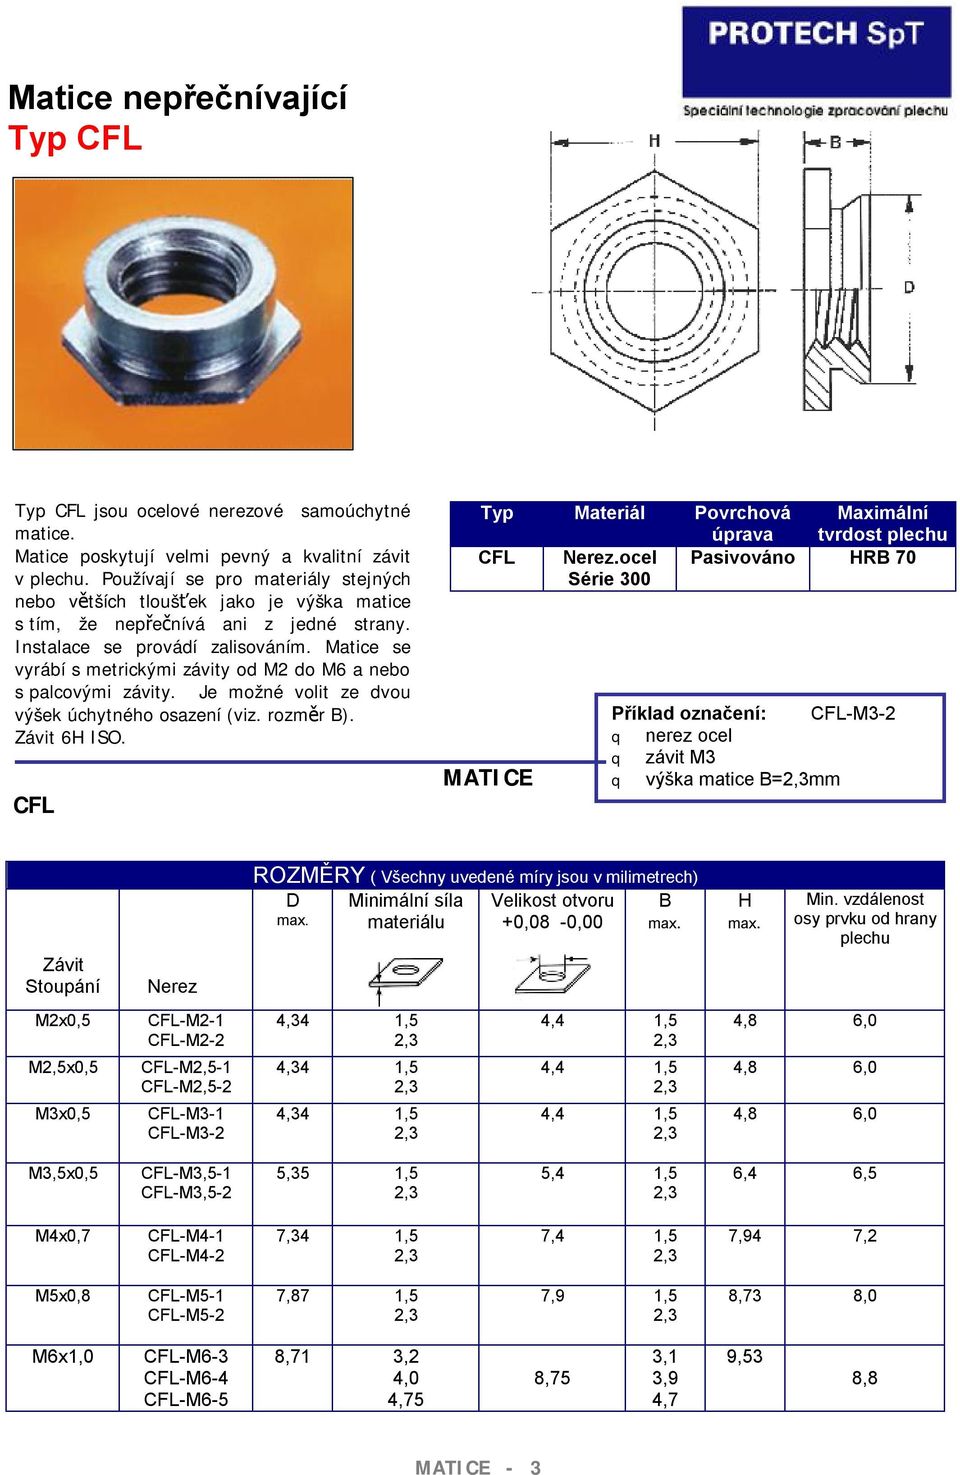 Matice se vyrábí s metrickými závity od M2 do M6 a nebo s palcovými závity. Je možné volit ze dvou výšek úchytného osazení (viz. rozměr B). 6H ISO.